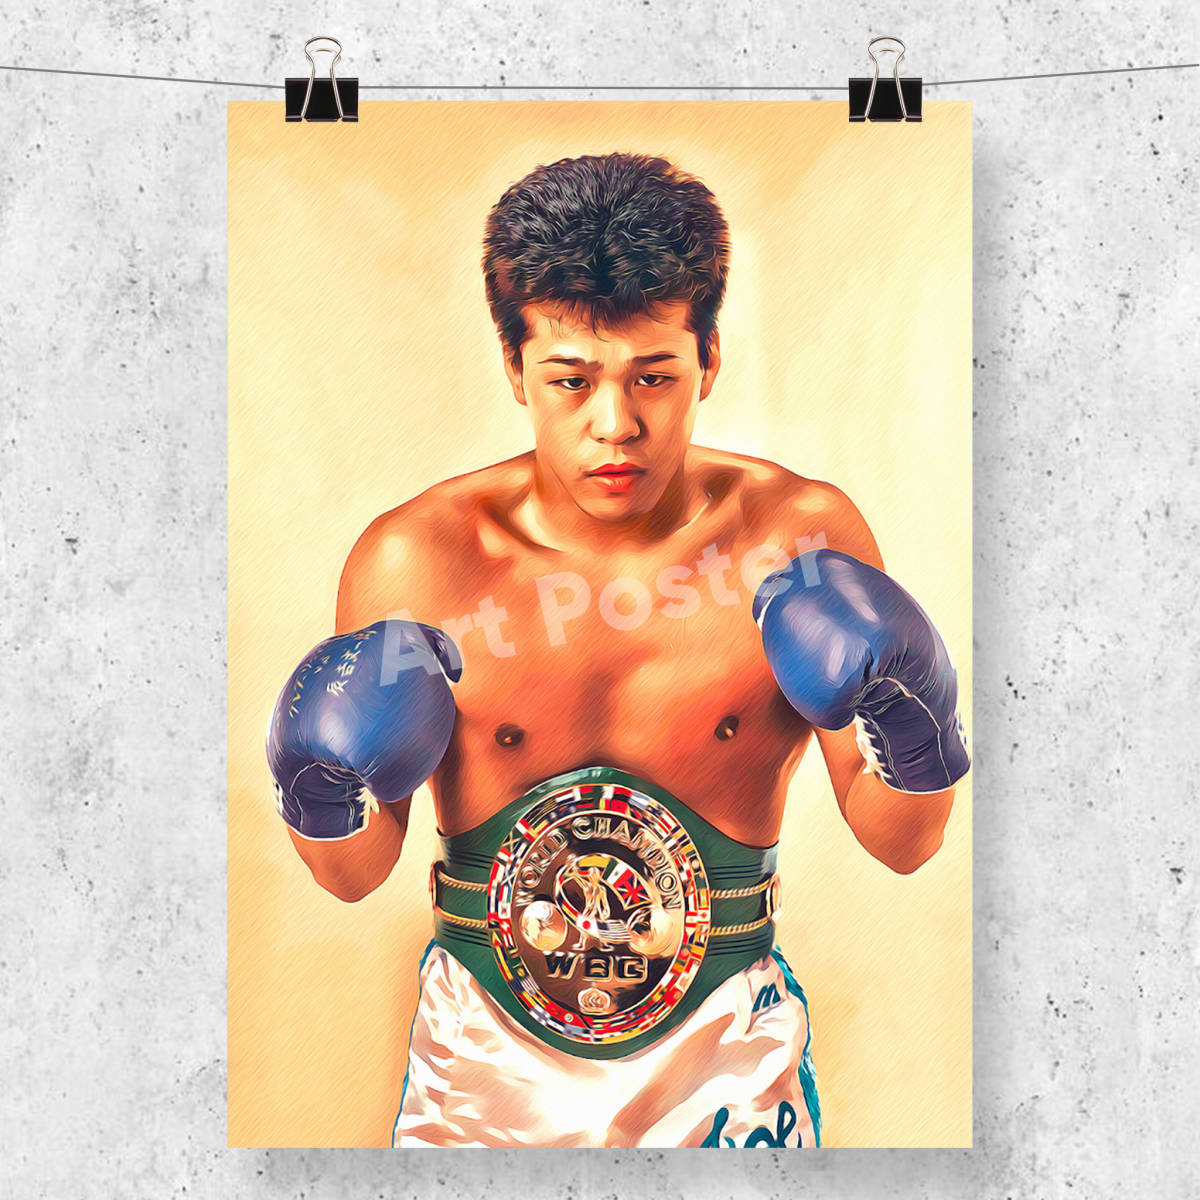 超可爱の WBC世界バンタム級 統一王座決定戦 薬師寺 辰吉 チケット